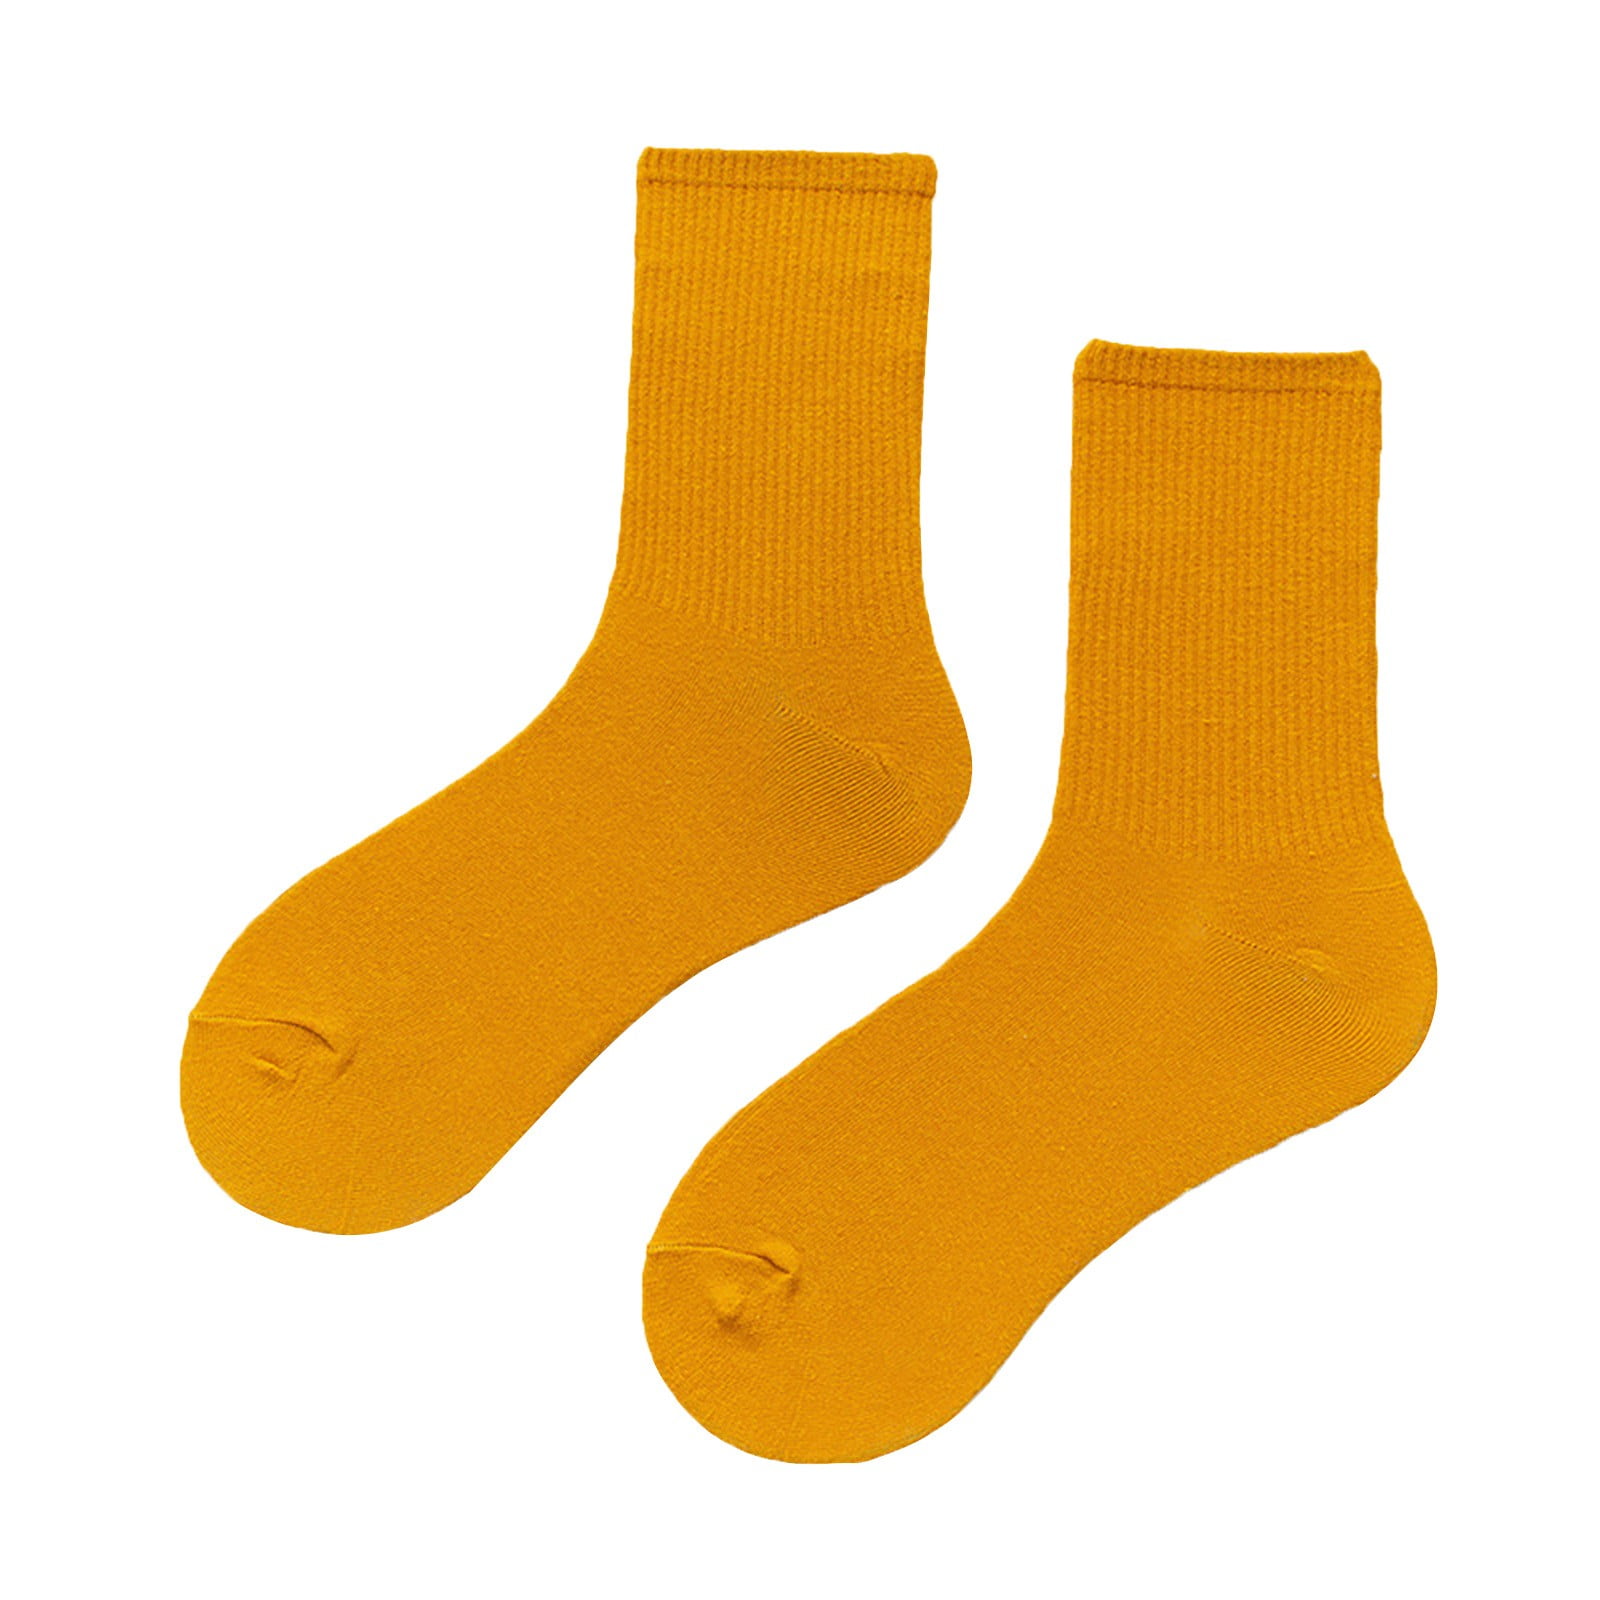 Solid Color Toe Socks (Adult Medium)